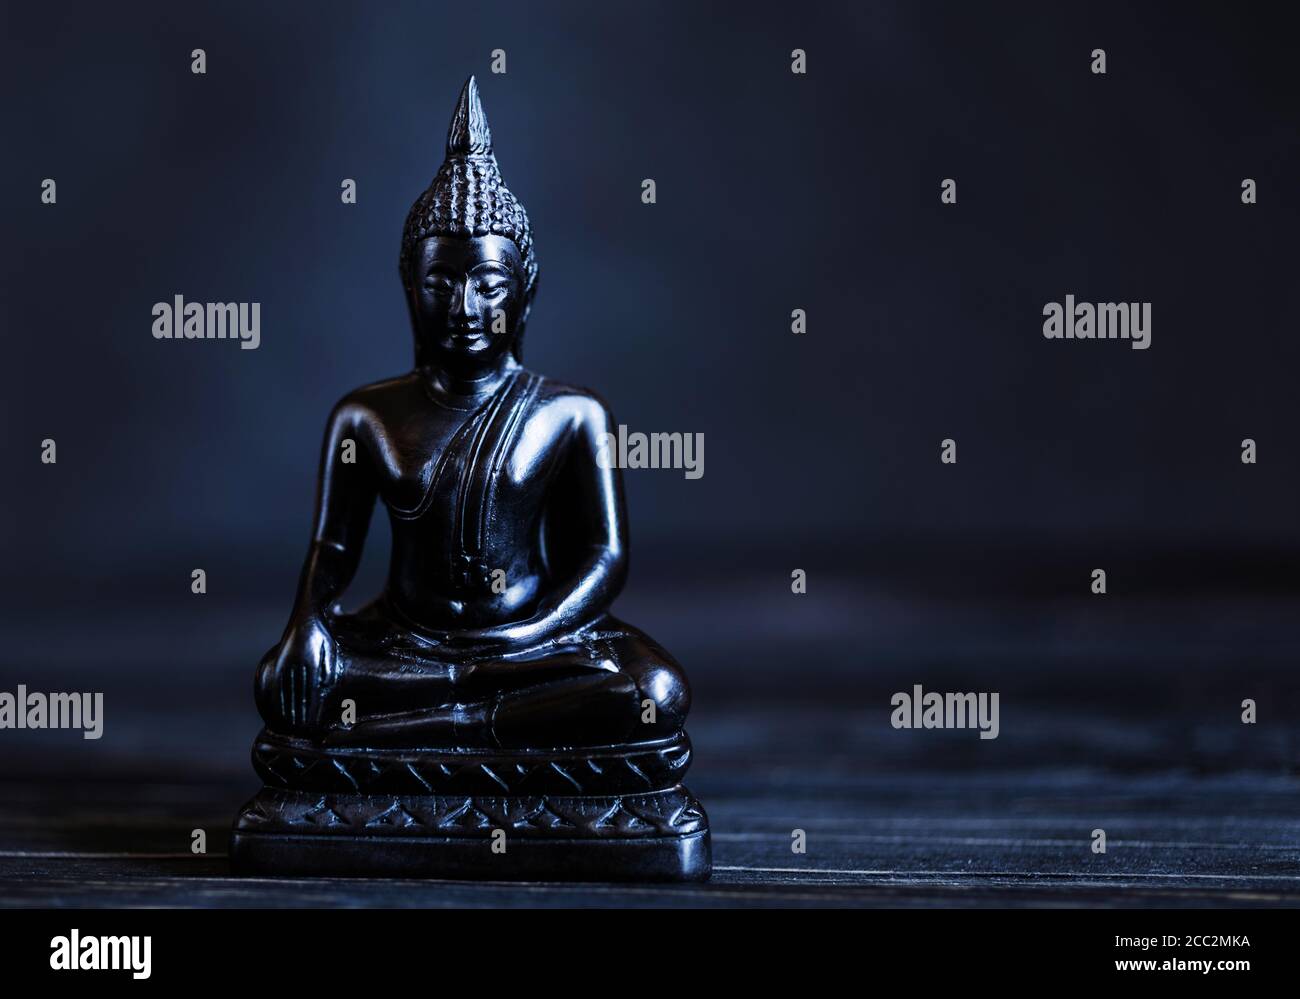 Symbole du bouddhisme. Bouddha antique Shakyamuni sur fond sombre. Concept de calme. Copier l'espace. Banque D'Images